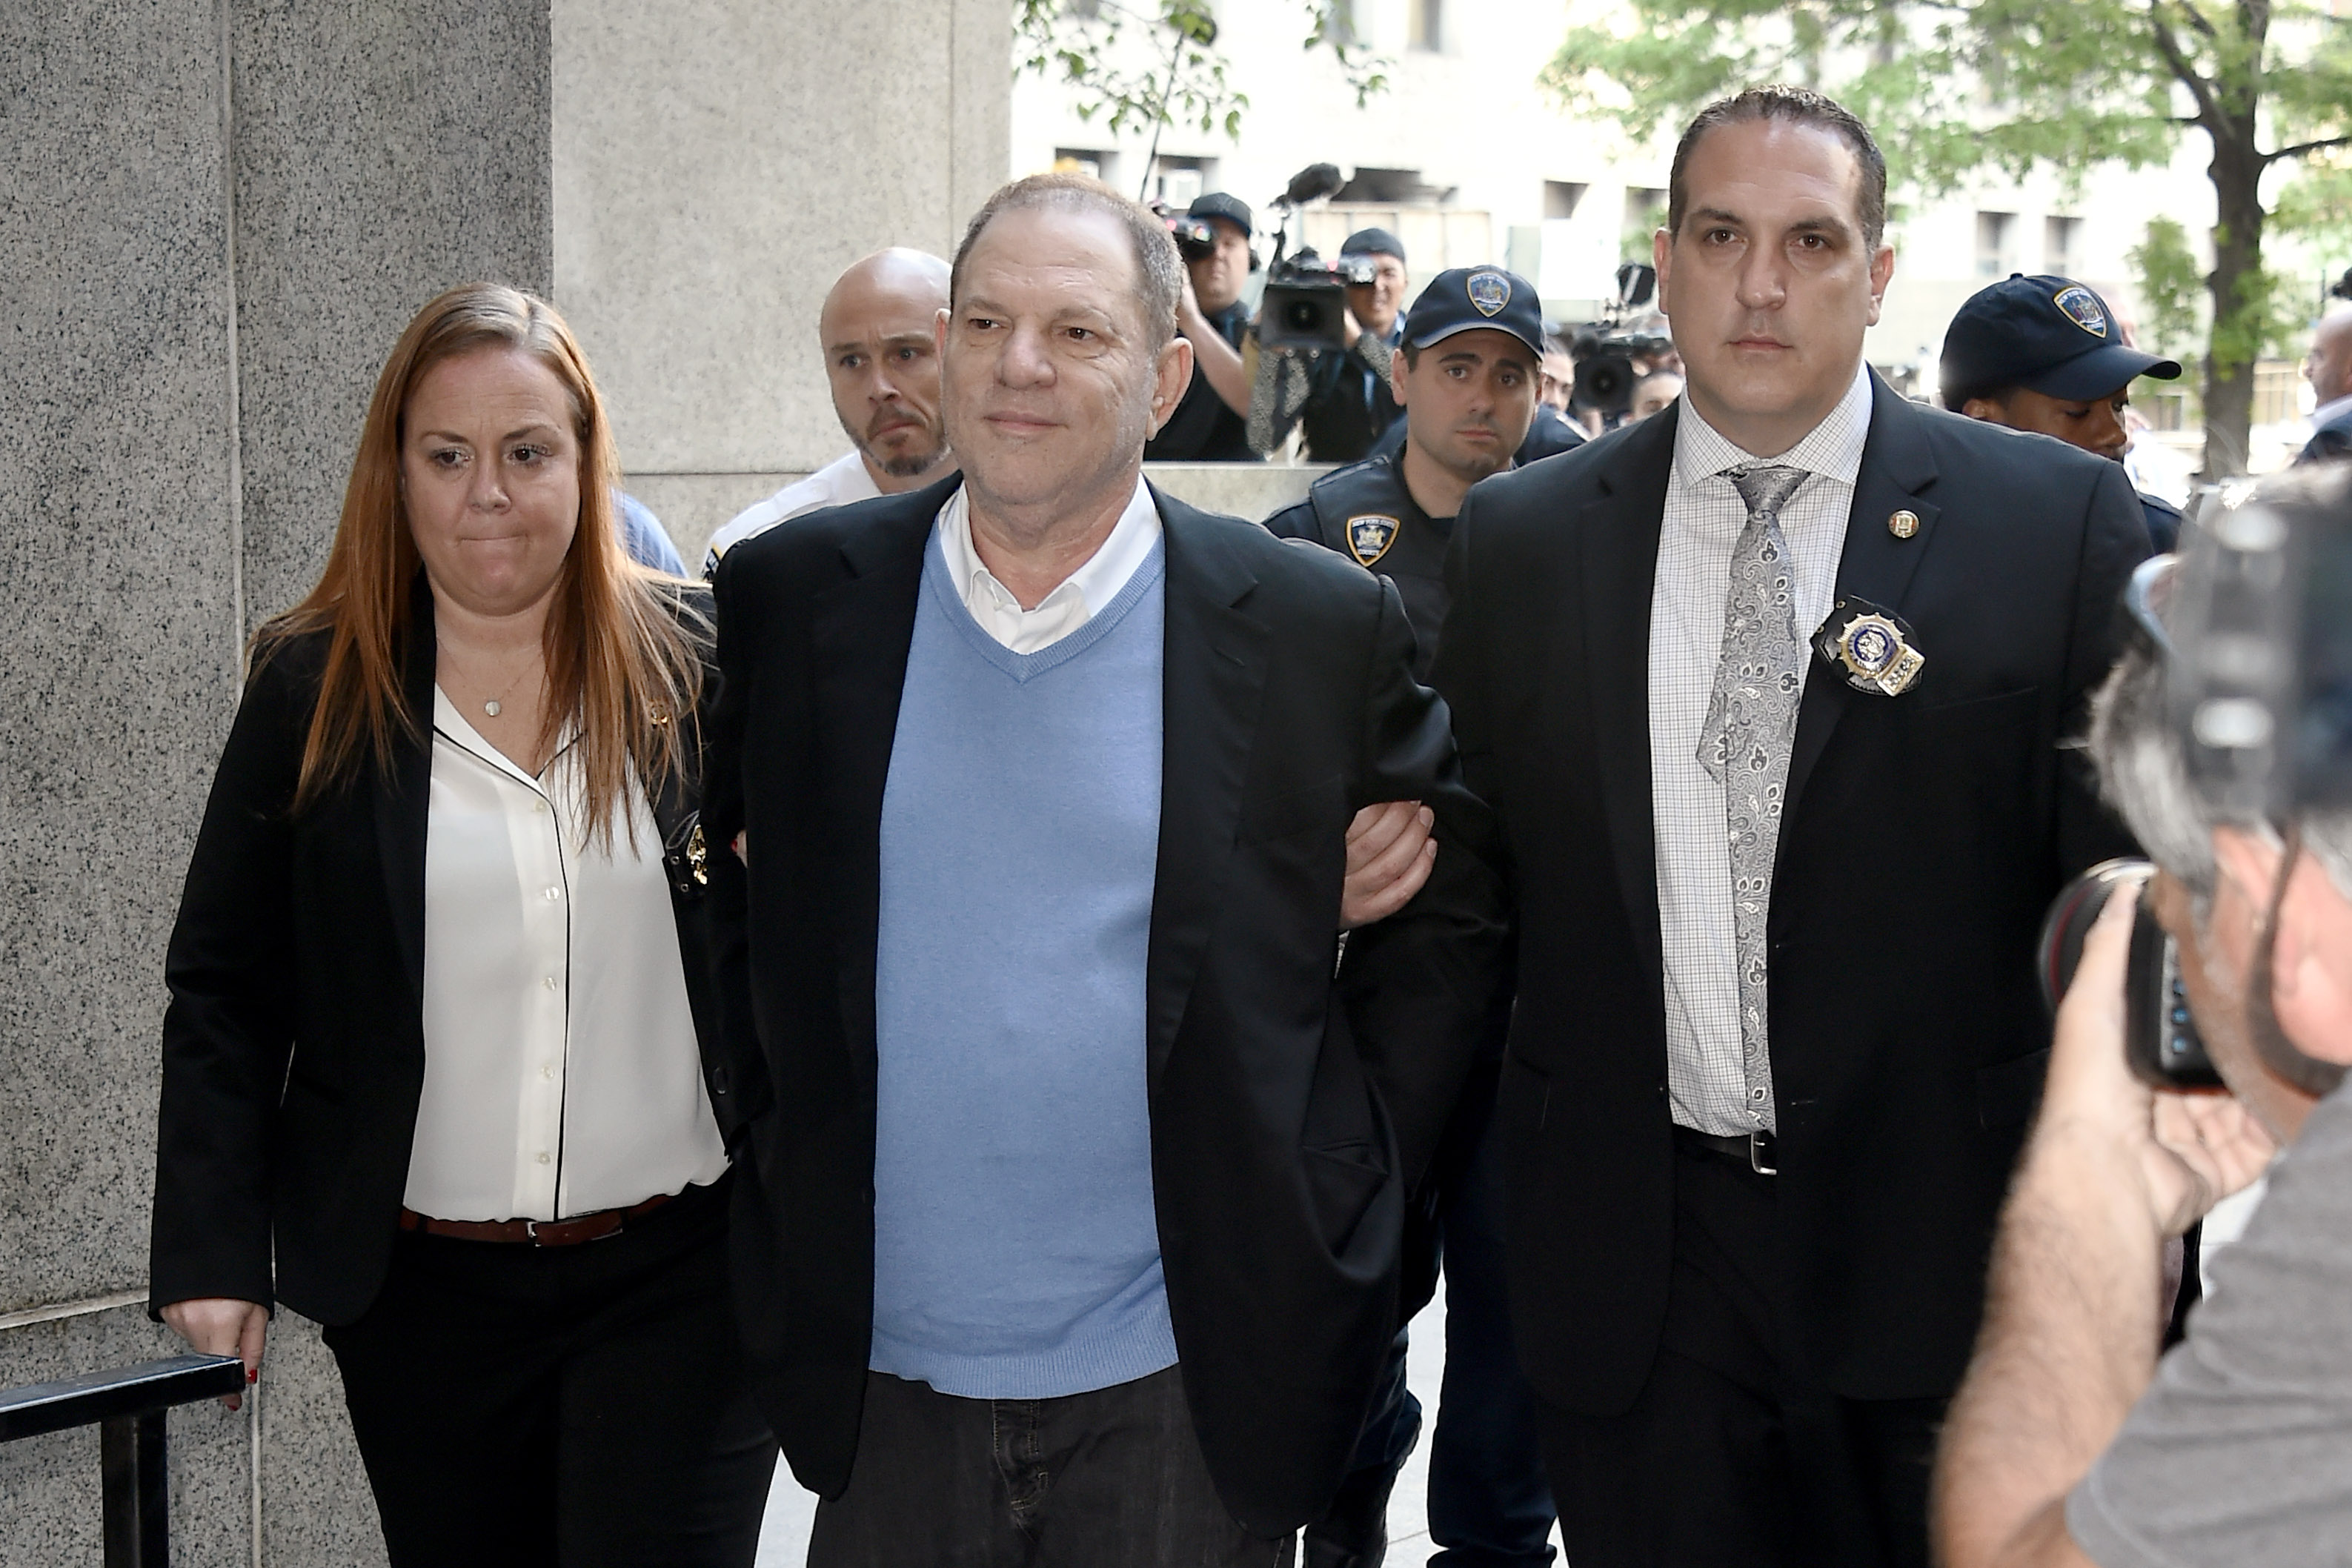 הארווי ויינשטיין נכנס לבית המשפט הפלילי במנהטן באזיקים לאחר שנעצר באשמת אונס והתעללות מינית, ב -25 במאי 2018 בניו יורק | צילום: Gettyimages